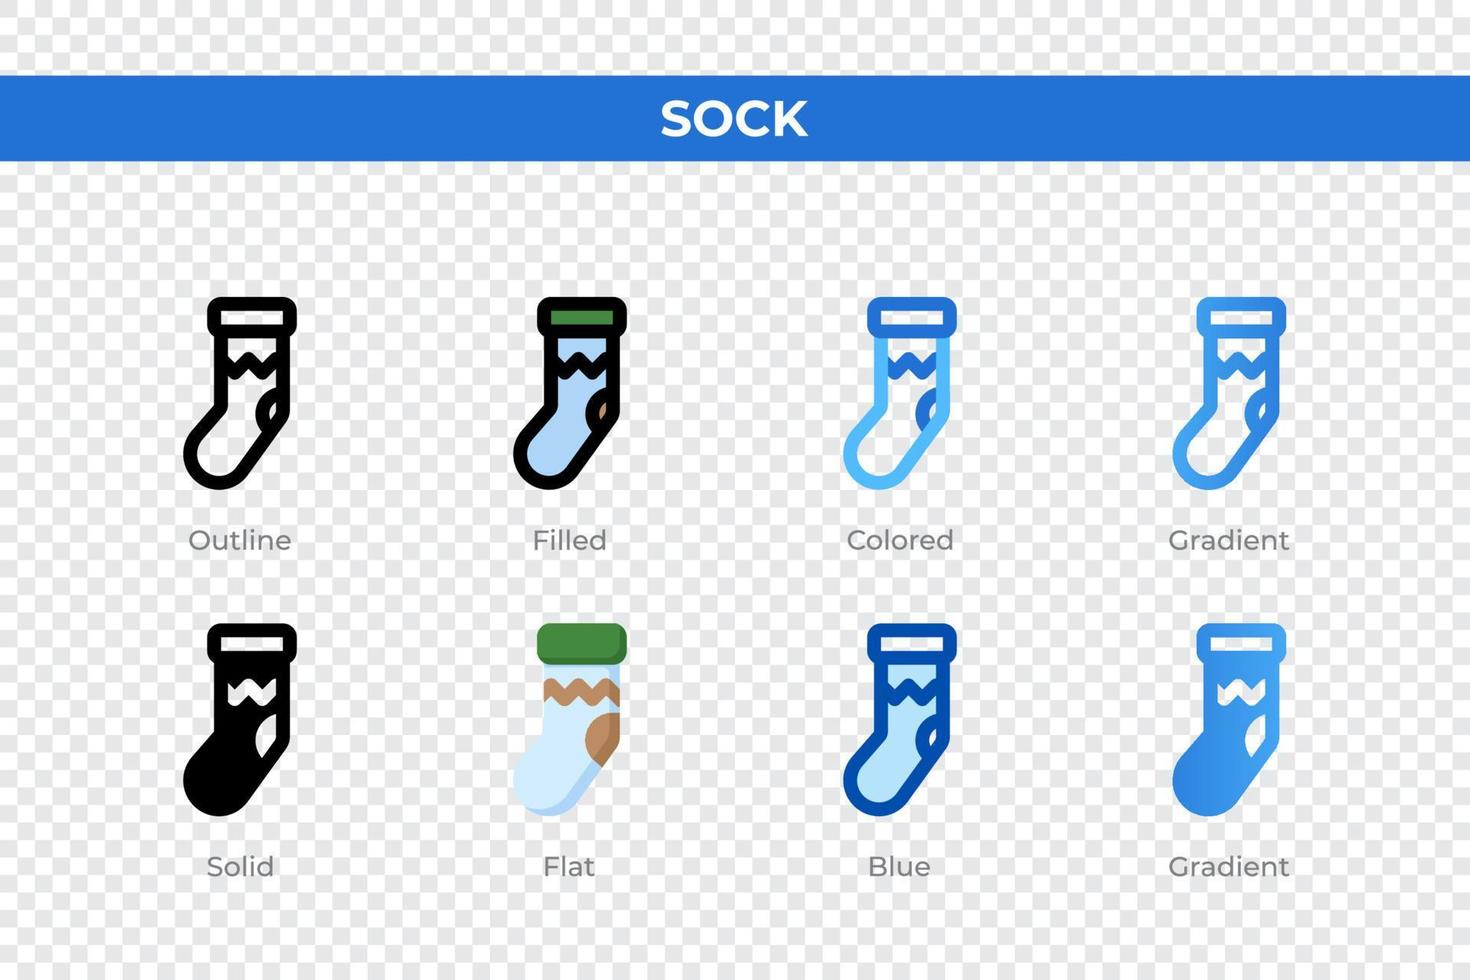 iconos de calcetines en diferentes estilos. conjunto de iconos de calcetines. símbolo de vacaciones. conjunto de iconos de estilo diferente. ilustración vectorial vector